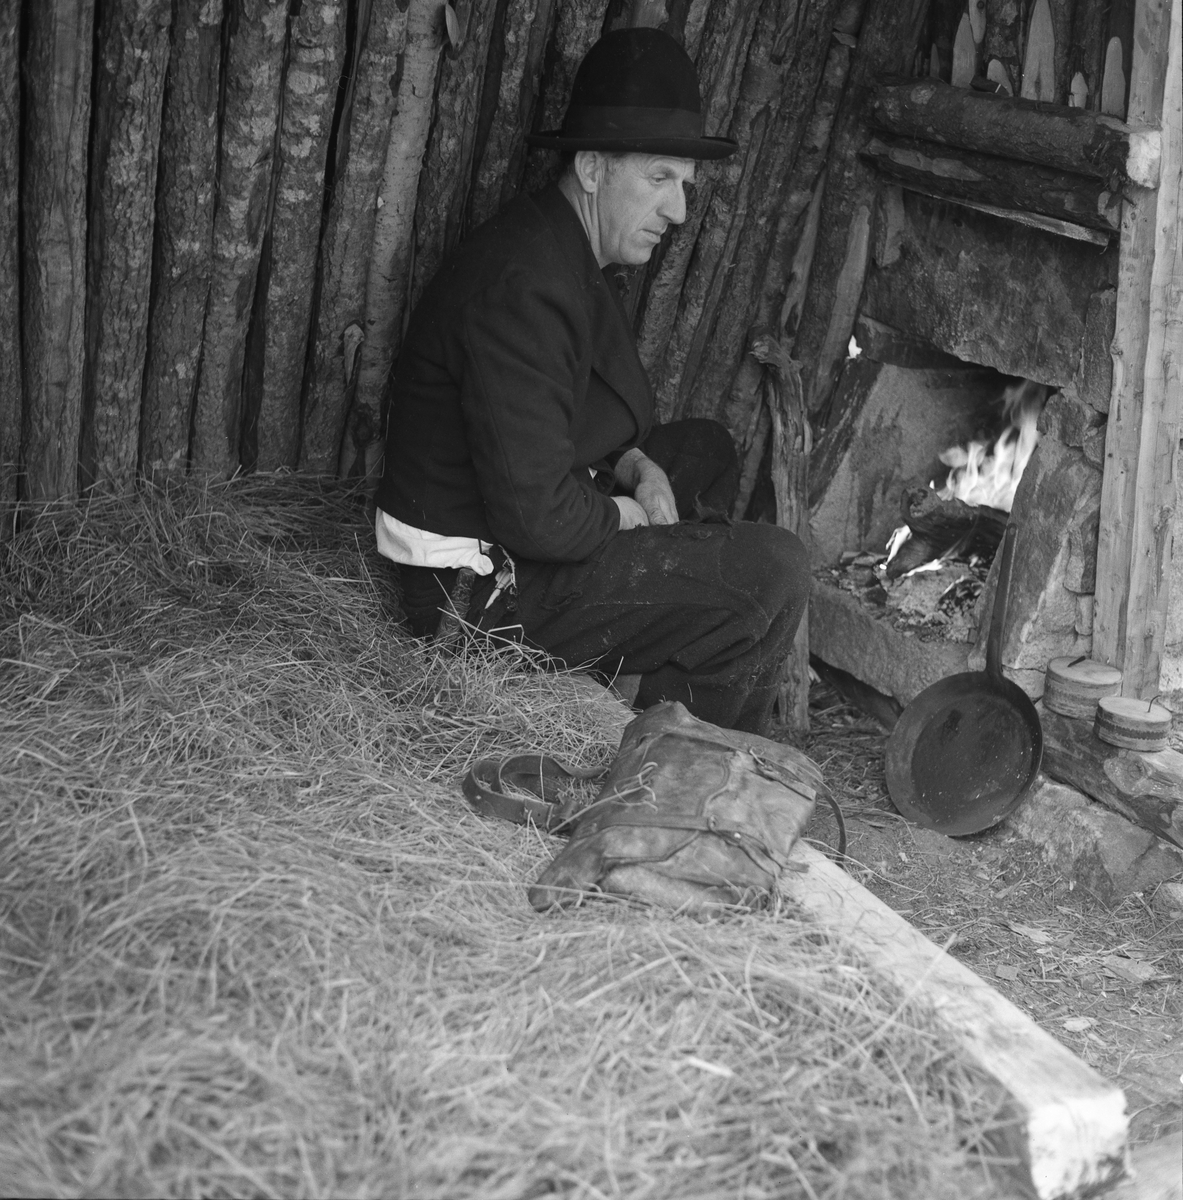 Interiør fra såkalt kjøyte (jordkoie) i Drangedal i Telemark. Kjøyta var en enkel koietype, nesten utelukkende bygd av materialer som fantes i skogen og så enkelt konstruert at skogsarbeidere uten bygningsteknisk kompetanse kunne få den ferdig på kort tid. Jørund Midttun (1887-1969), som kom til Telemark som ung forstkandidat i 1914 og ble en sentral skikkelse i skogbruket der gjennom hele sin yrkeskarriere, beskrev dette slik: 

«Framgangsmåten med oppsettinga var gjerne slik at når tre-fire hoggarar hadde teke hogst saman eller nær kvarandre, drog dei til skogs frå morgonen av, og dei rakk då å setta opp ei slik kjøyte på ettermiddagen.

Kjøyta var bygd av «props». Det var smale stokkar som vart reist opp på ei rund eller firkanta tuft nedantil. Oppe gjekk stokkane saman i topp, og kjøyta vart som eit spisstelt å sjå til. … Det var heller ikkje uvanleg at kjøyta vart sjåandes ut som ein avslutta pyramide. Slik er den Skogbruksmuseet har på Prestøya [SJF-B.0009] …

For å gjera kjøytene tette og varme, la dei granbork eller bjørkenever utanpå stokkane og deretter kom eit tjukt lag av torv eller jord. Ofte vart det på toppen og noko nedetter lagt ei hette av bork eller never. Til dør bruka dei ein lem av kløyvde bord eller skier. Denne vart passa inn i ein karm skrådd med hyttetaket og kunne berre opnast utetter. Ved sida av døra vart det på utsida av taket (veggen) mura ein peis. Sjølve grua var inne i kjøyta, men elles sjekk skorsteinen opp utanfor. Sengene (benk-brisk) gjorde dei vanlegvis også av smått rundvirke, litt opp frå bakken, slik at dei vart liggande med føtene mot døråpning og gruve.

Desse kjøytene var gode og varme, og her budde så vel bonden sjølv som folka hans på virkedagane når hogsten gjekk.»

Midttun skrev videre at «Slike kjøyter var vanlege over store luter av Telemark heilt fram til 1920-åra.» At det ble slutt med kjøytebygginga på denne tida hadde sannsynligvis samanheng med at Stortinget i 1915 vedtok en lov om husvær for folk og hester under skogsarbeid og fløting, som skulle følges opp med lokale vedtekter. Året etter fulgte herredsstyret i Drangedal opp med regler som poengterte at skogshusvær skulle være «tilstrækkelig rummelig i forhold til arbeidernes antal», og at de skulle være «forsynt med tætte, gode gulv og vægger, godt, drypfrit tak, god og tæt dør og vindu, hylder og sovebrisk, anbragt mindst 40 cm. over gulvet, peis, enten alene eller i forbindelse med ovn …». Sjøl om Midttun, sikkert med rette, hevdet at kjøytene var gode og varme, var det flere av de andre kravene i de nevnte vedtektene de ikke tilfredsstilte. 

Kjøyta på dette fotografiet var muligens en rekonstruksjon, bygd av Gunnar Holte (1919-2013), som her sitter på brisken framfor ildstedet, kledd i vadmelsklær og med stekepanna innen rekkevidde.